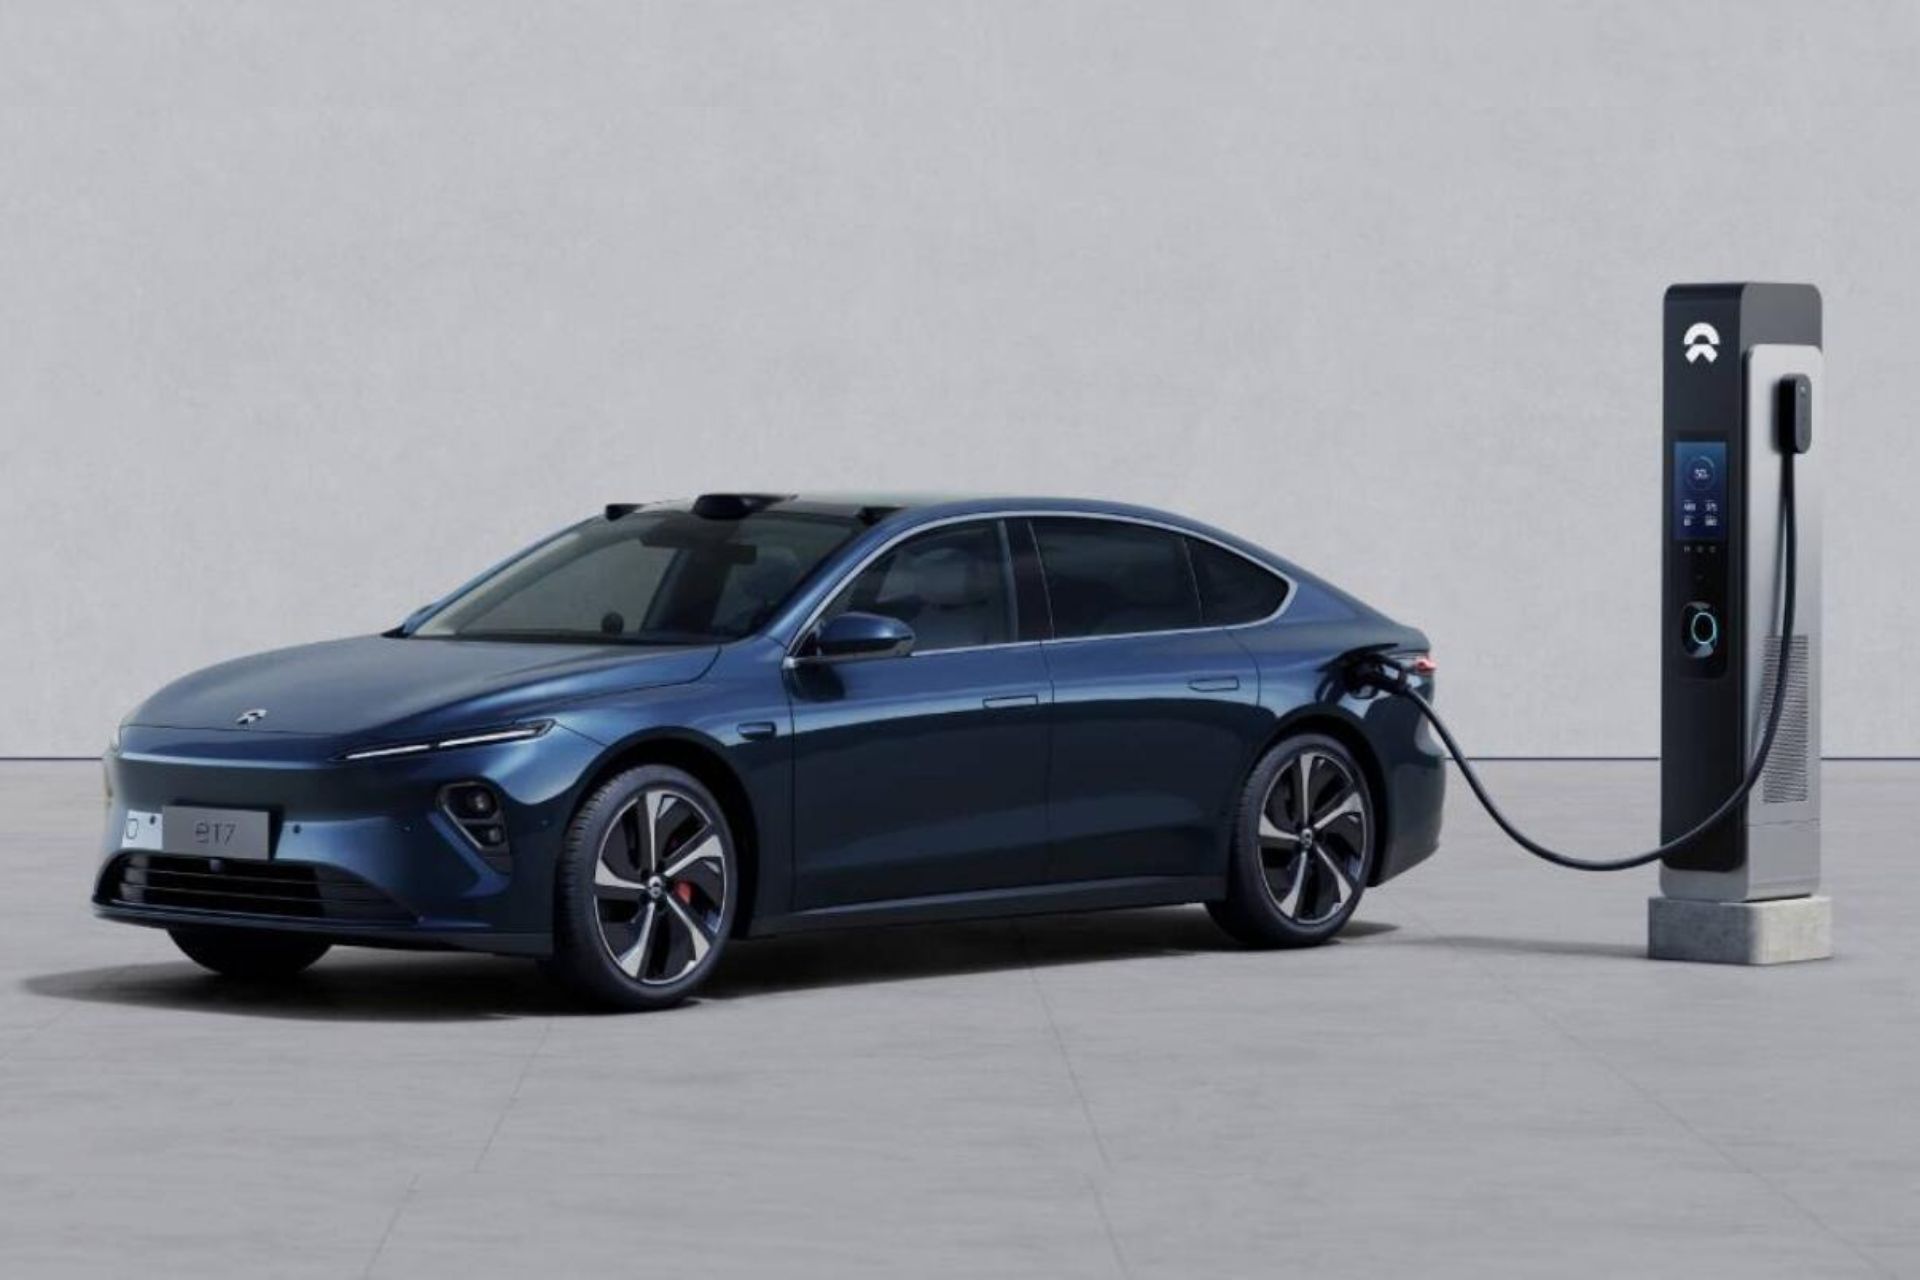 Borne de recharge voiture électrique : liste des marques